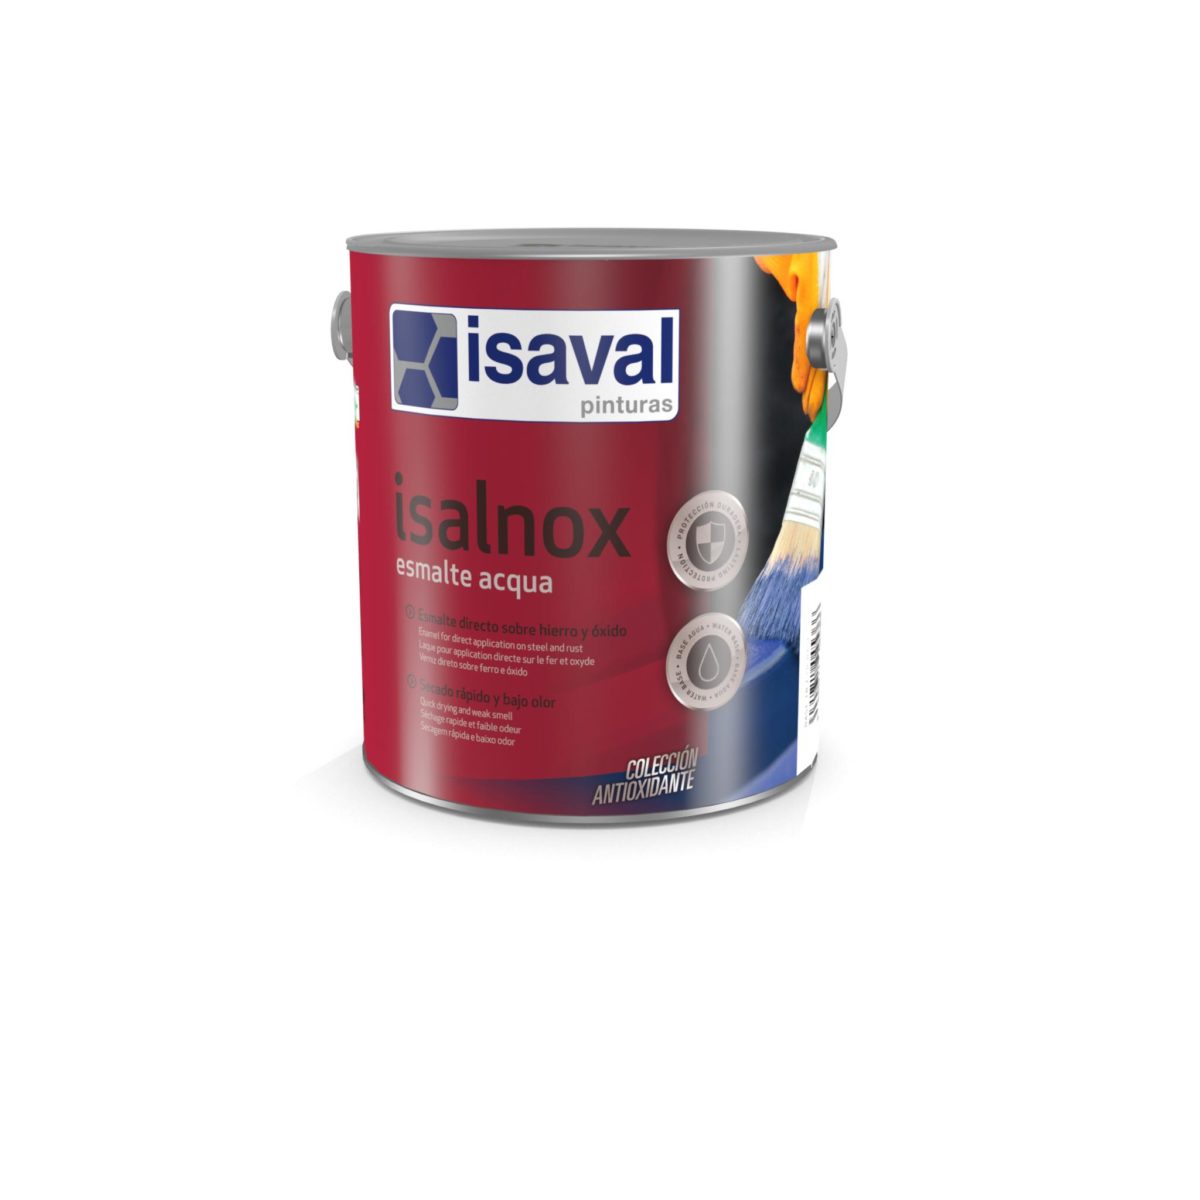 Isalnox Esmalte acqua. Esmalte antioxidante directo al metal de Pinturas Isaval